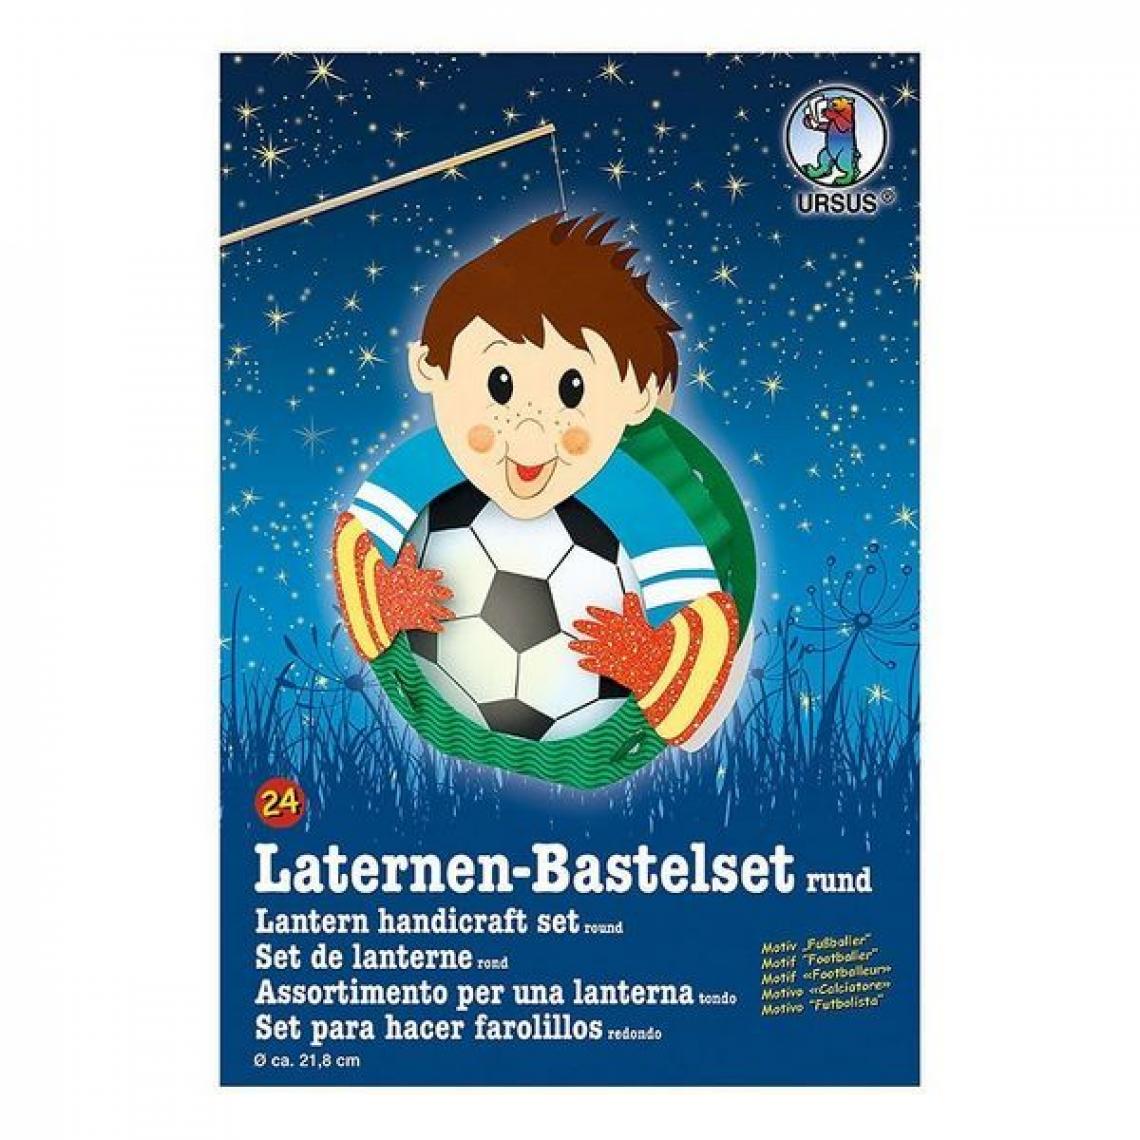 URSUS - URSUS Laternen-Bastelset "Fußballer" - Accessoire enfant